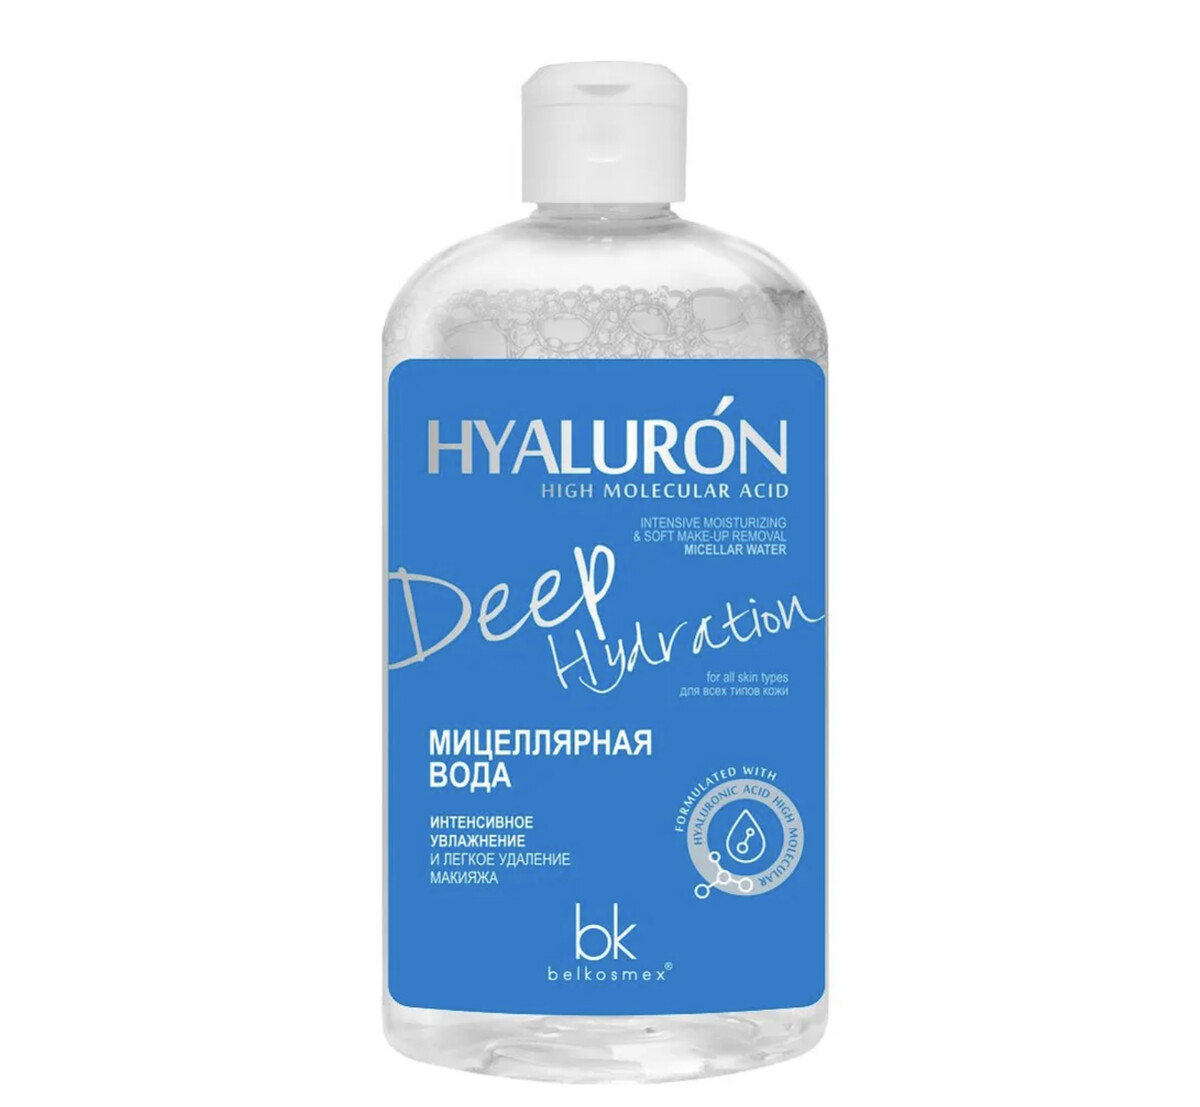 Hialuron deep hydration мицеллярная вода интенсивное увлажнение 500г гиалуроновая мицеллярная вода 200 мл